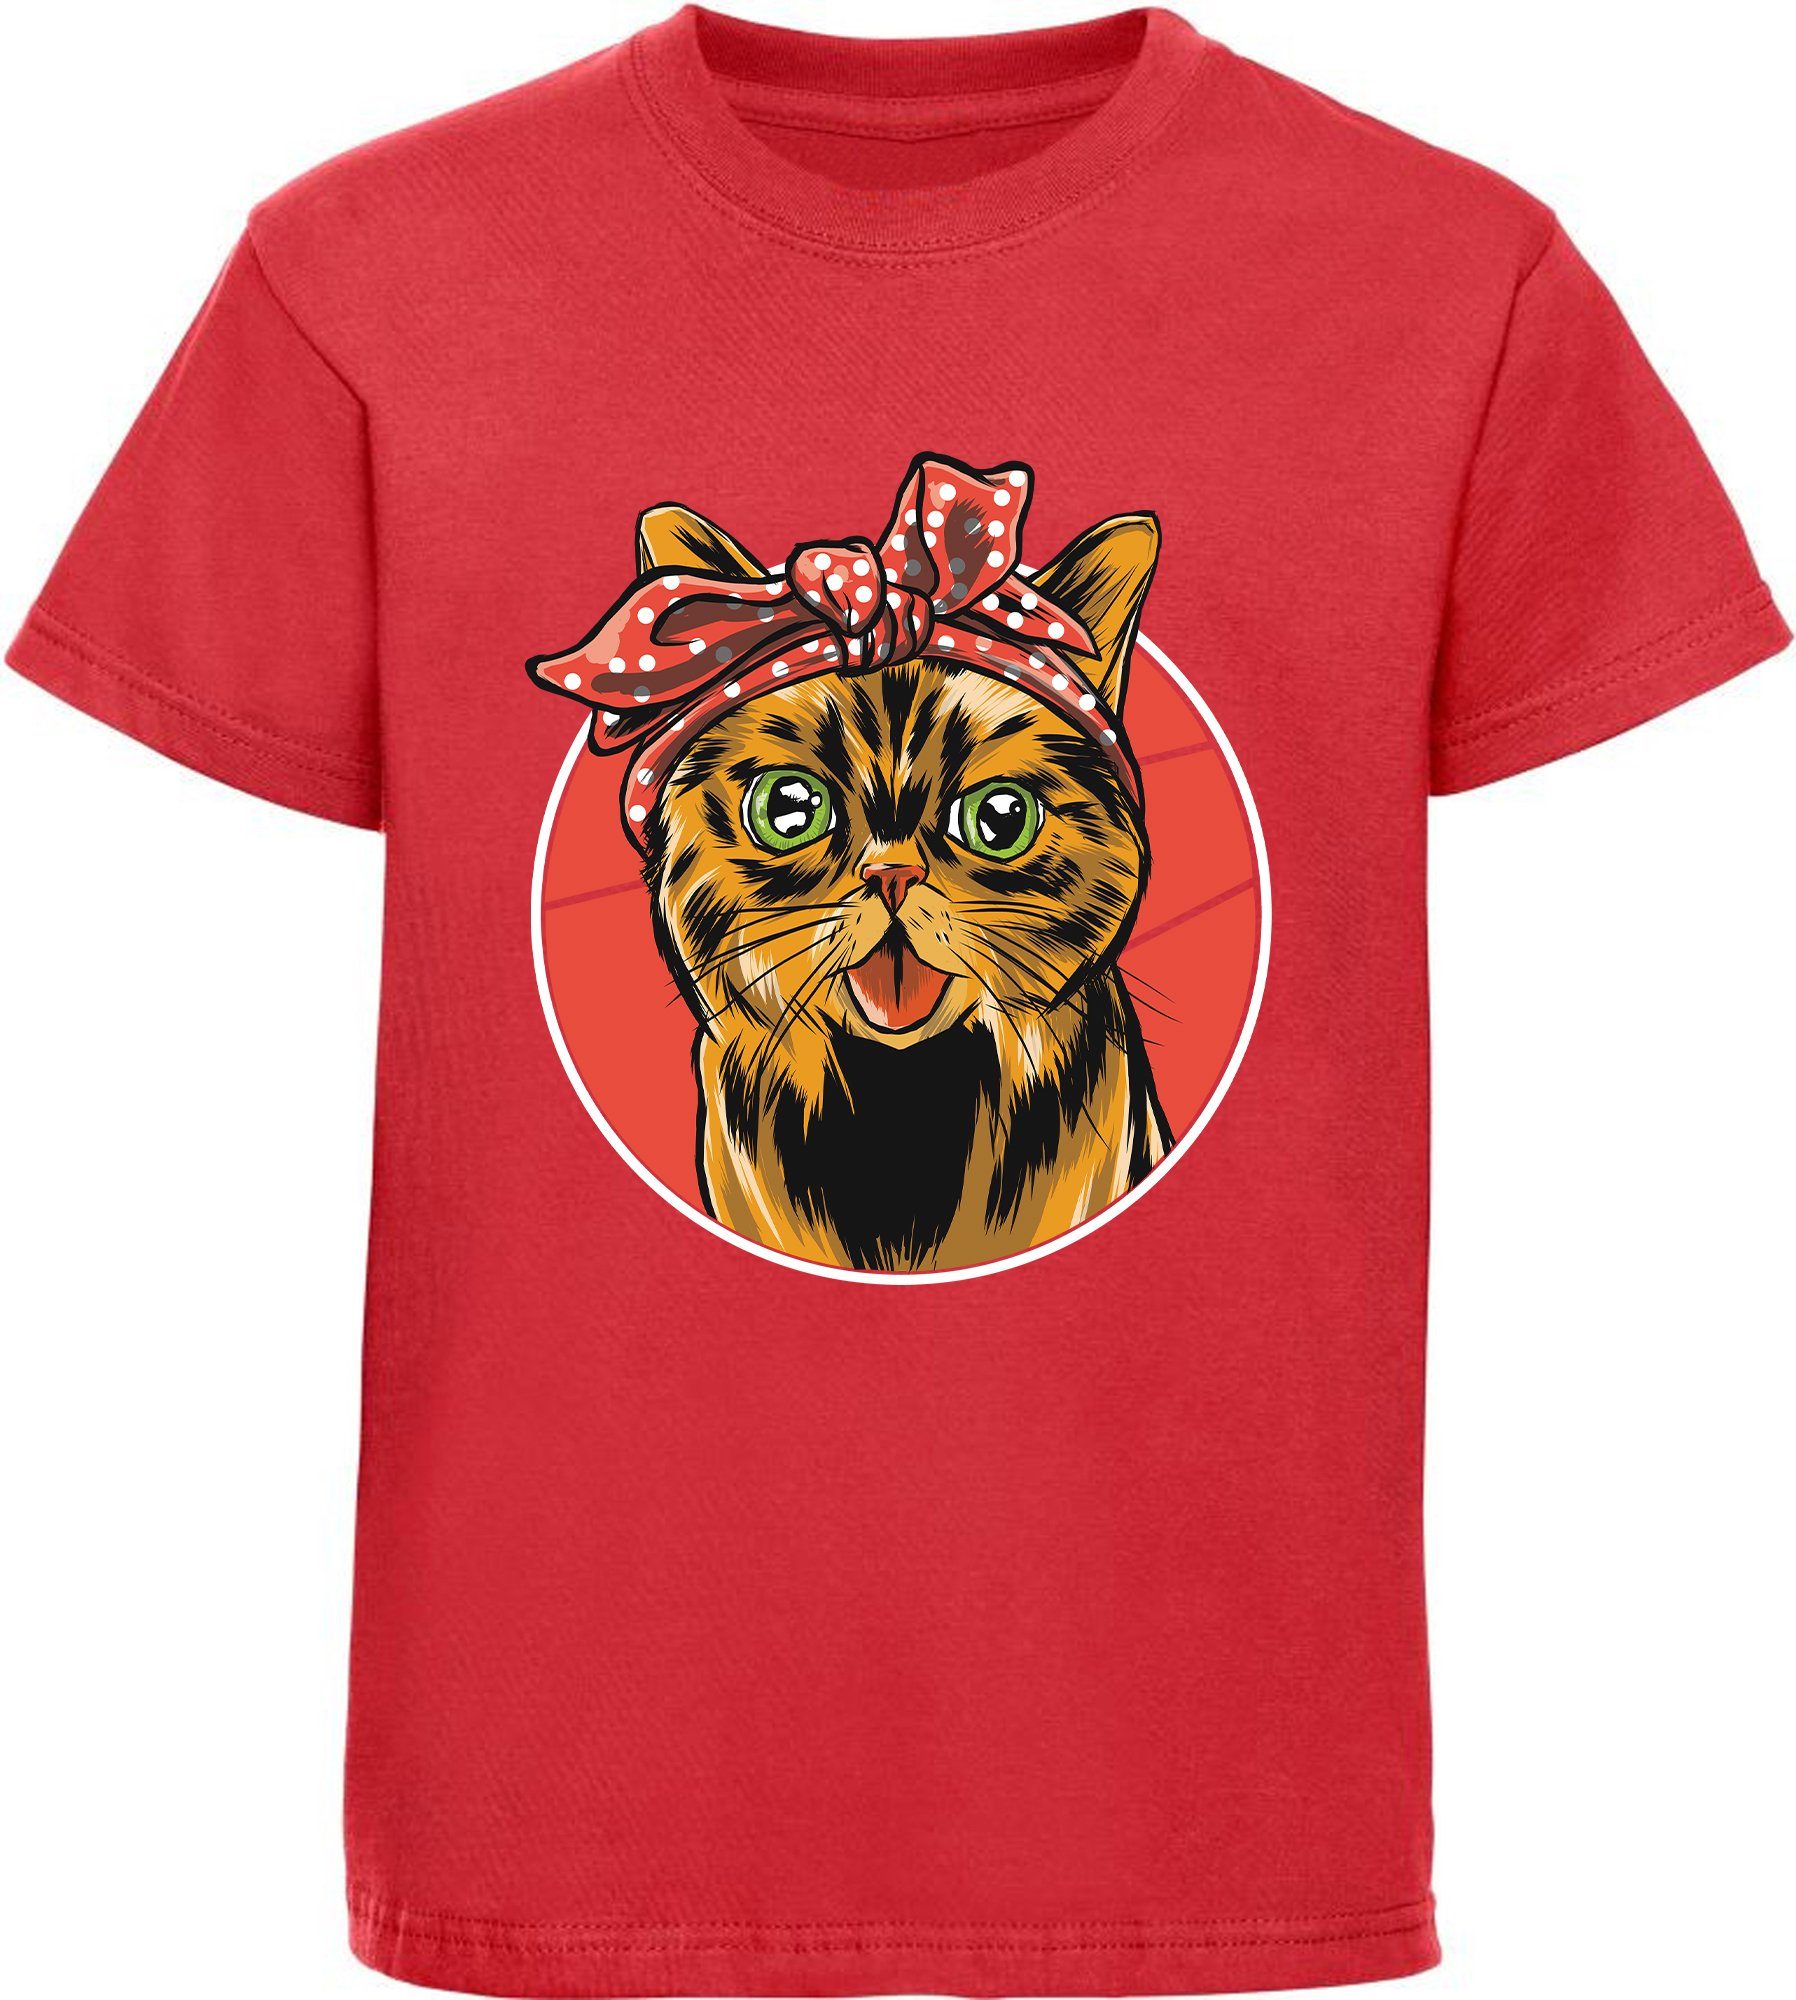 MyDesign24 Print-Shirt bedrucktes Kinder Mädchen T-Shirt Katze mit Schleife Baumwollshirt mit Katze, weiß, schwarz, rot, rosa, i103